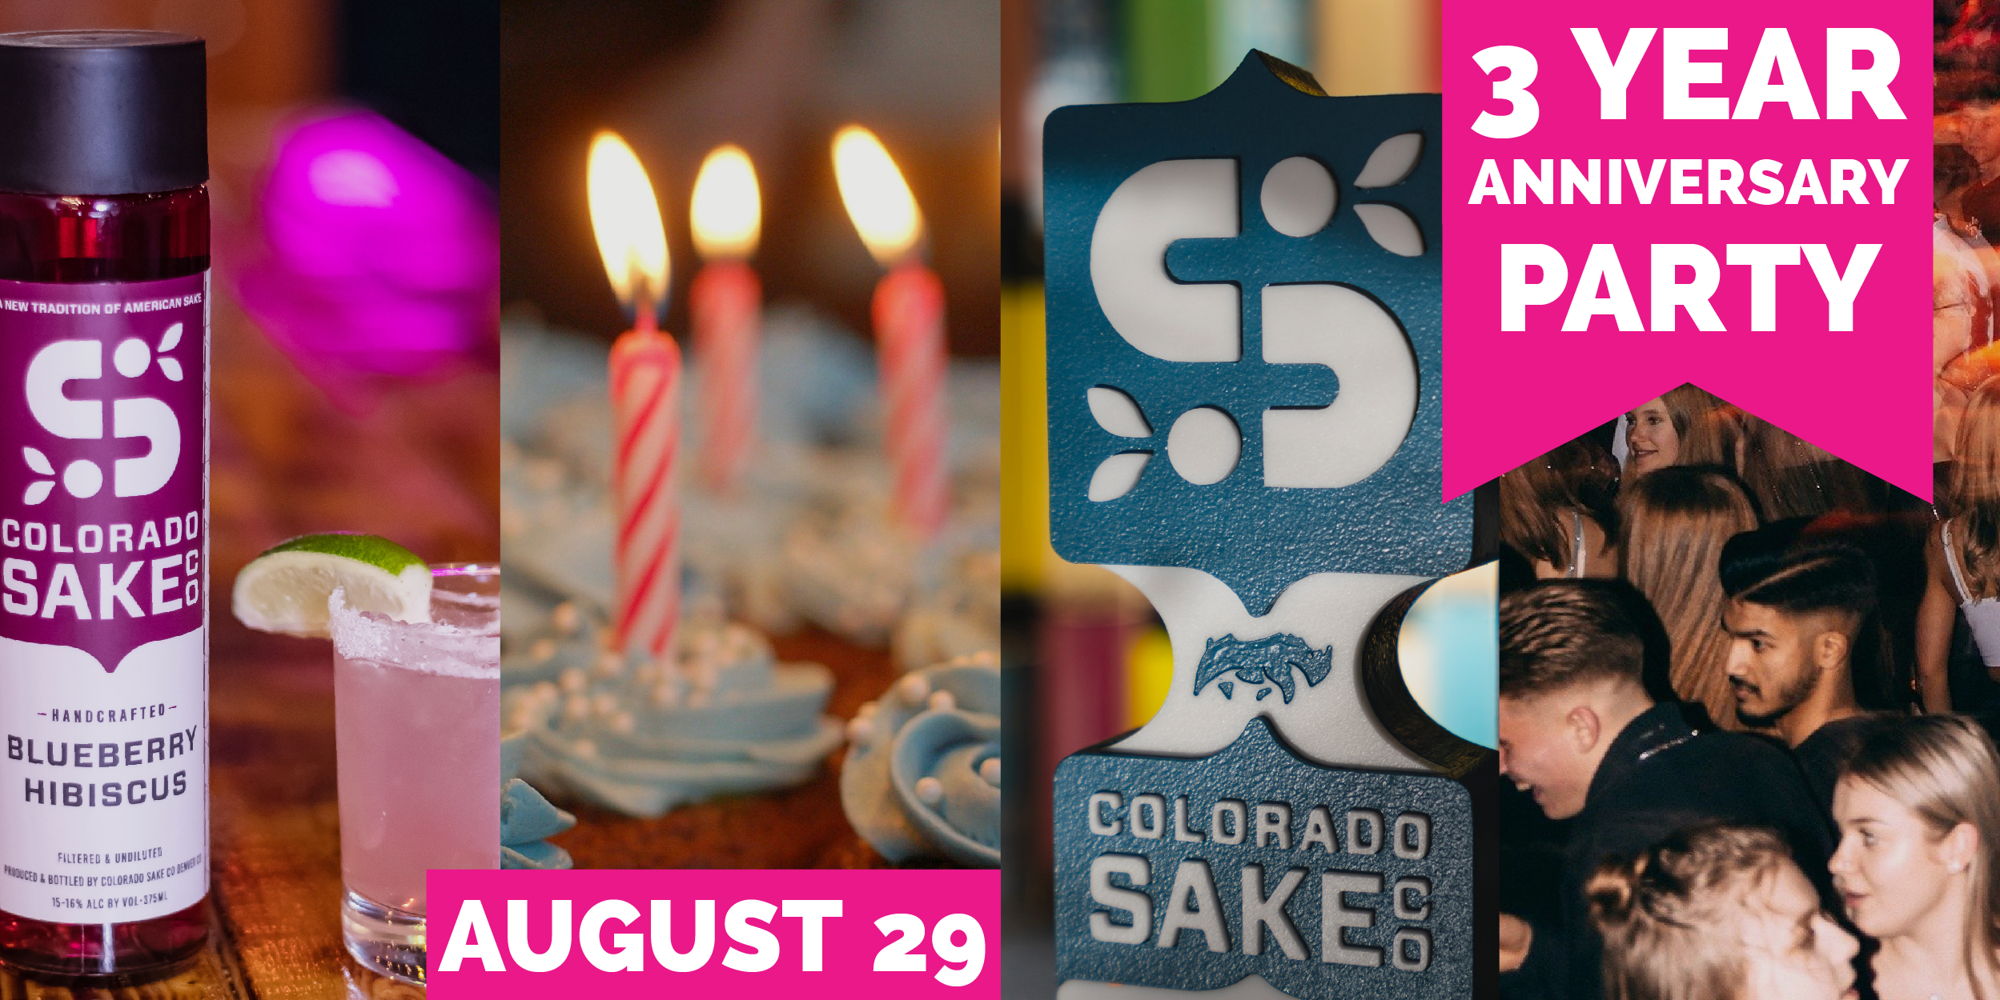 Colorado Sake 3yr Anniversary Party promotional image